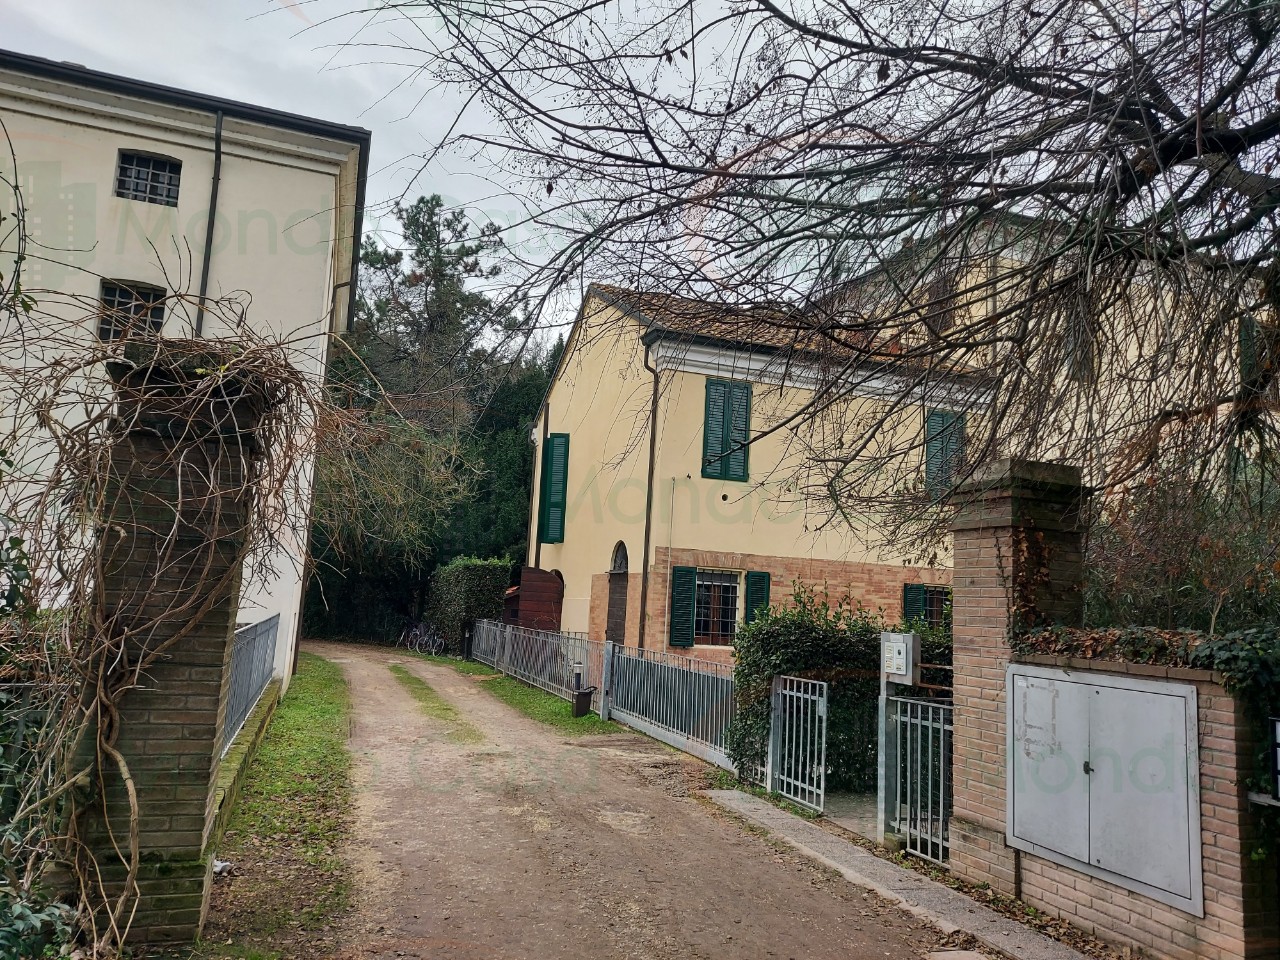 Villetta a schiera angolare in vendita a San Bartolo, Ravenna (RA)